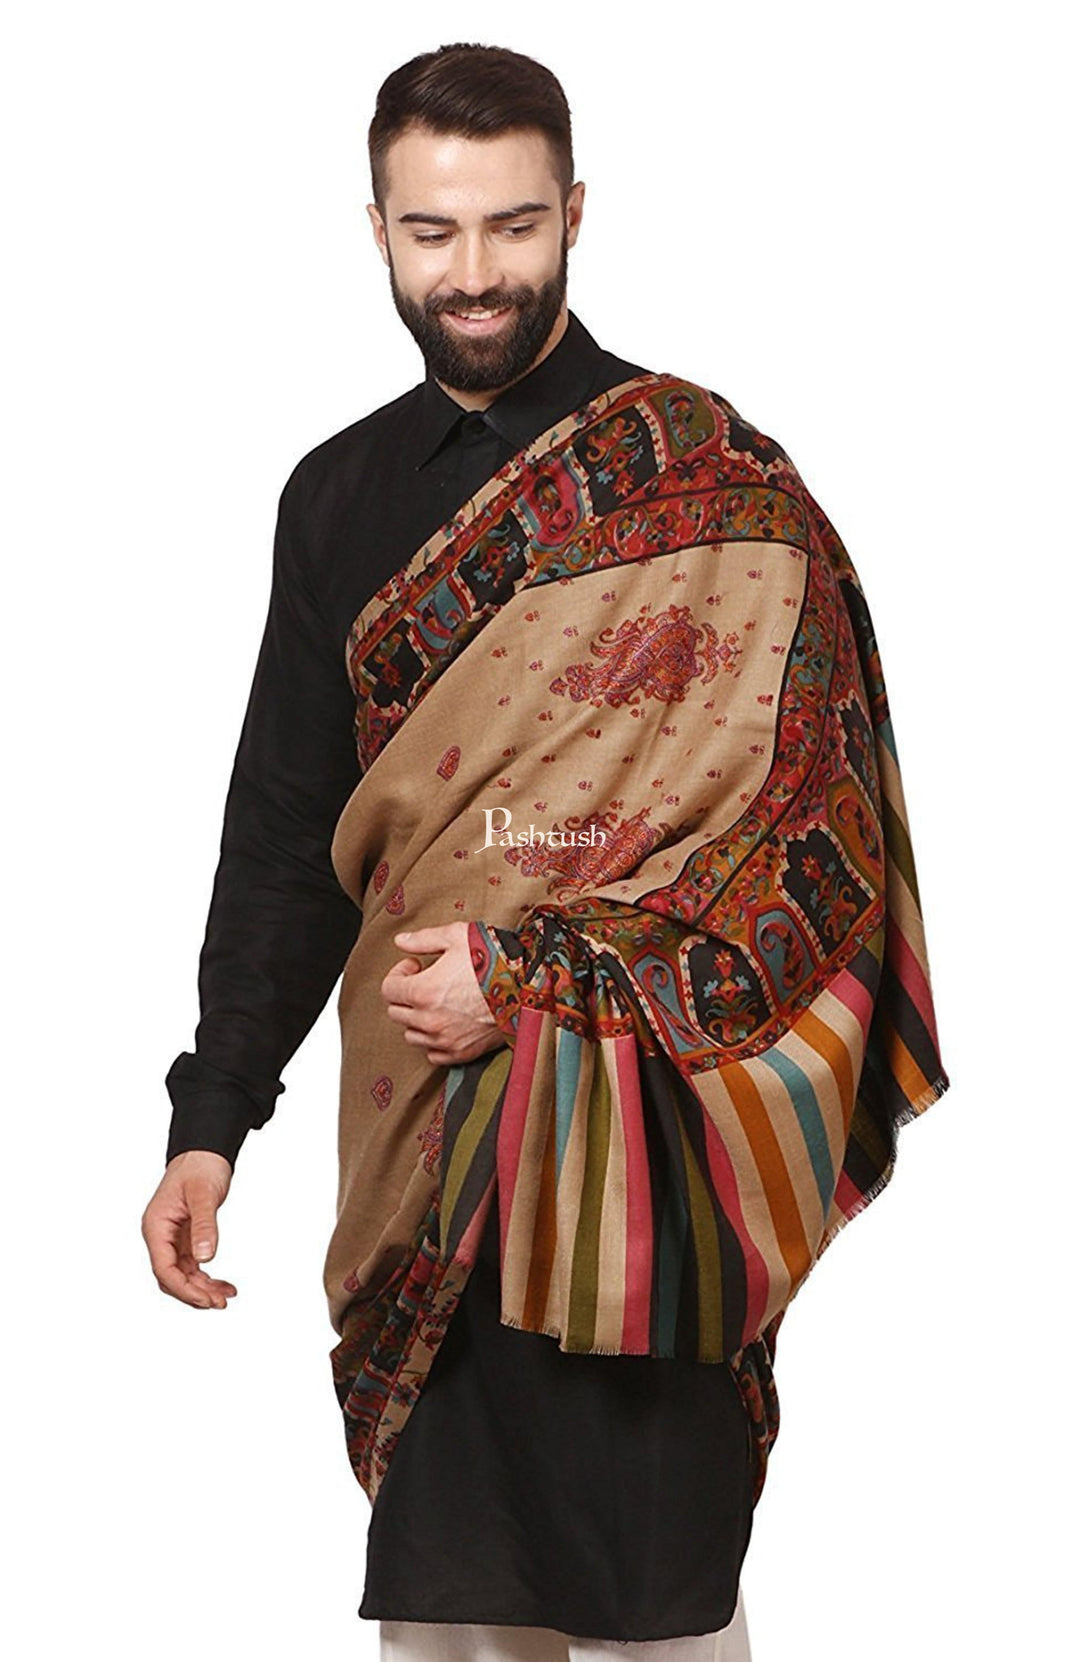 Pashtush India Mens Shawls Gents Shawl Pashtush Mens Kalamkari Embroidery Shawl, Gents  Shawls, Medium